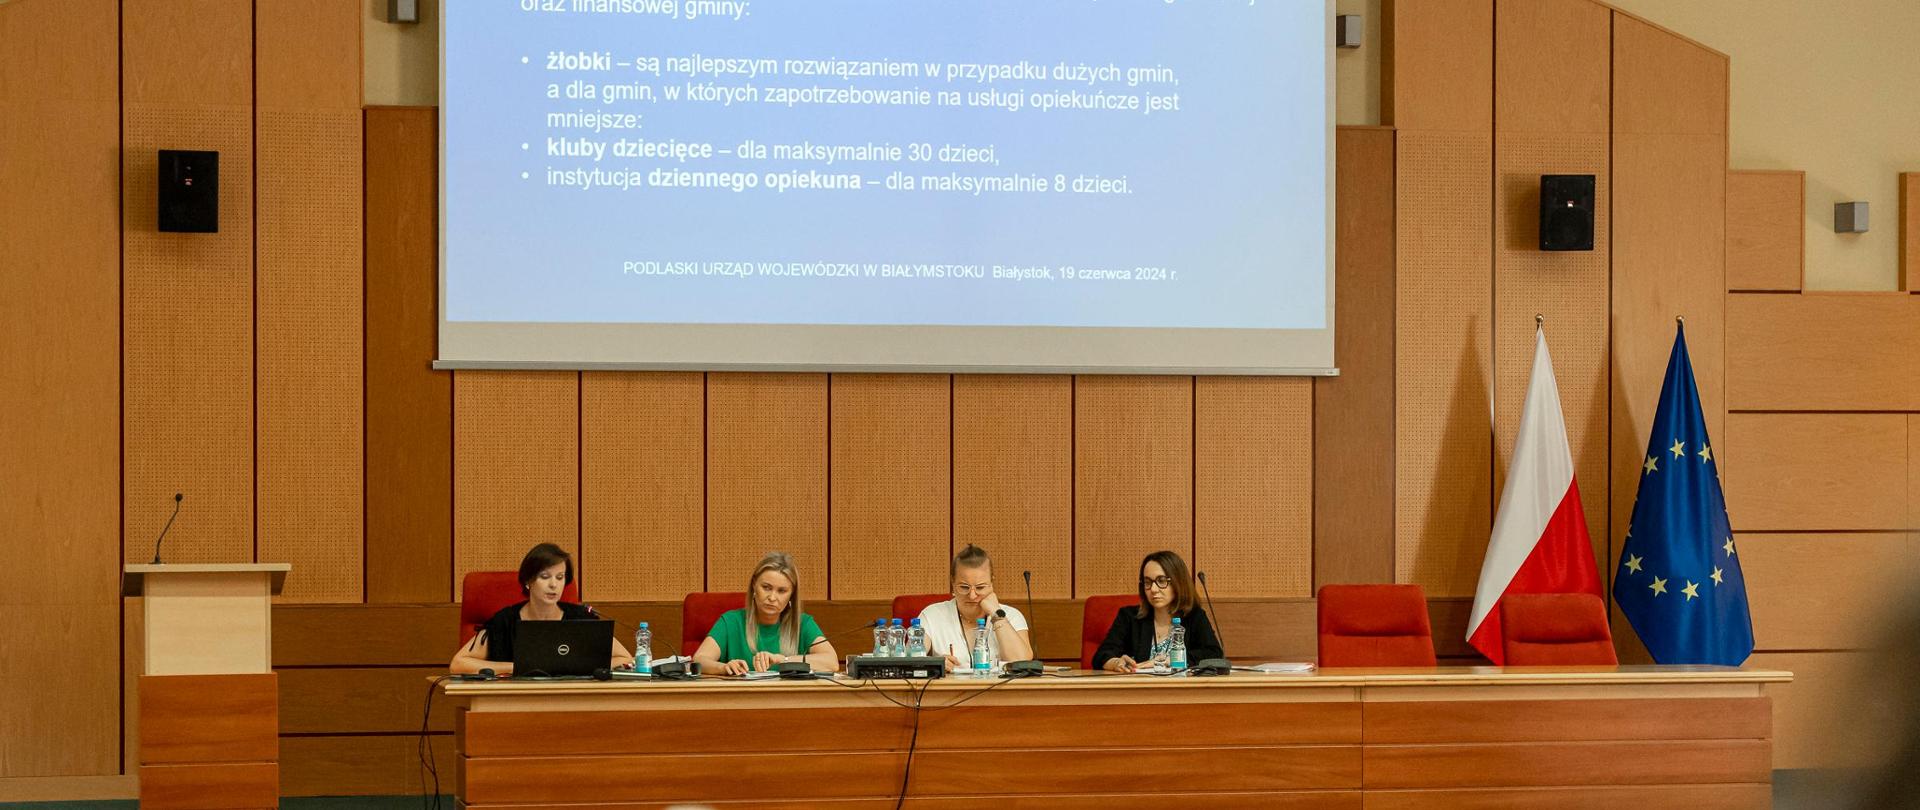 Wyłożona drewnem duża sala konferencyjna, cztery kobiety za długim stołem prezydialnym. Na ścianie za nimi duży ekran z prezentacją. Na pierwszym planie publiczność skierowana ku prelegentkom.